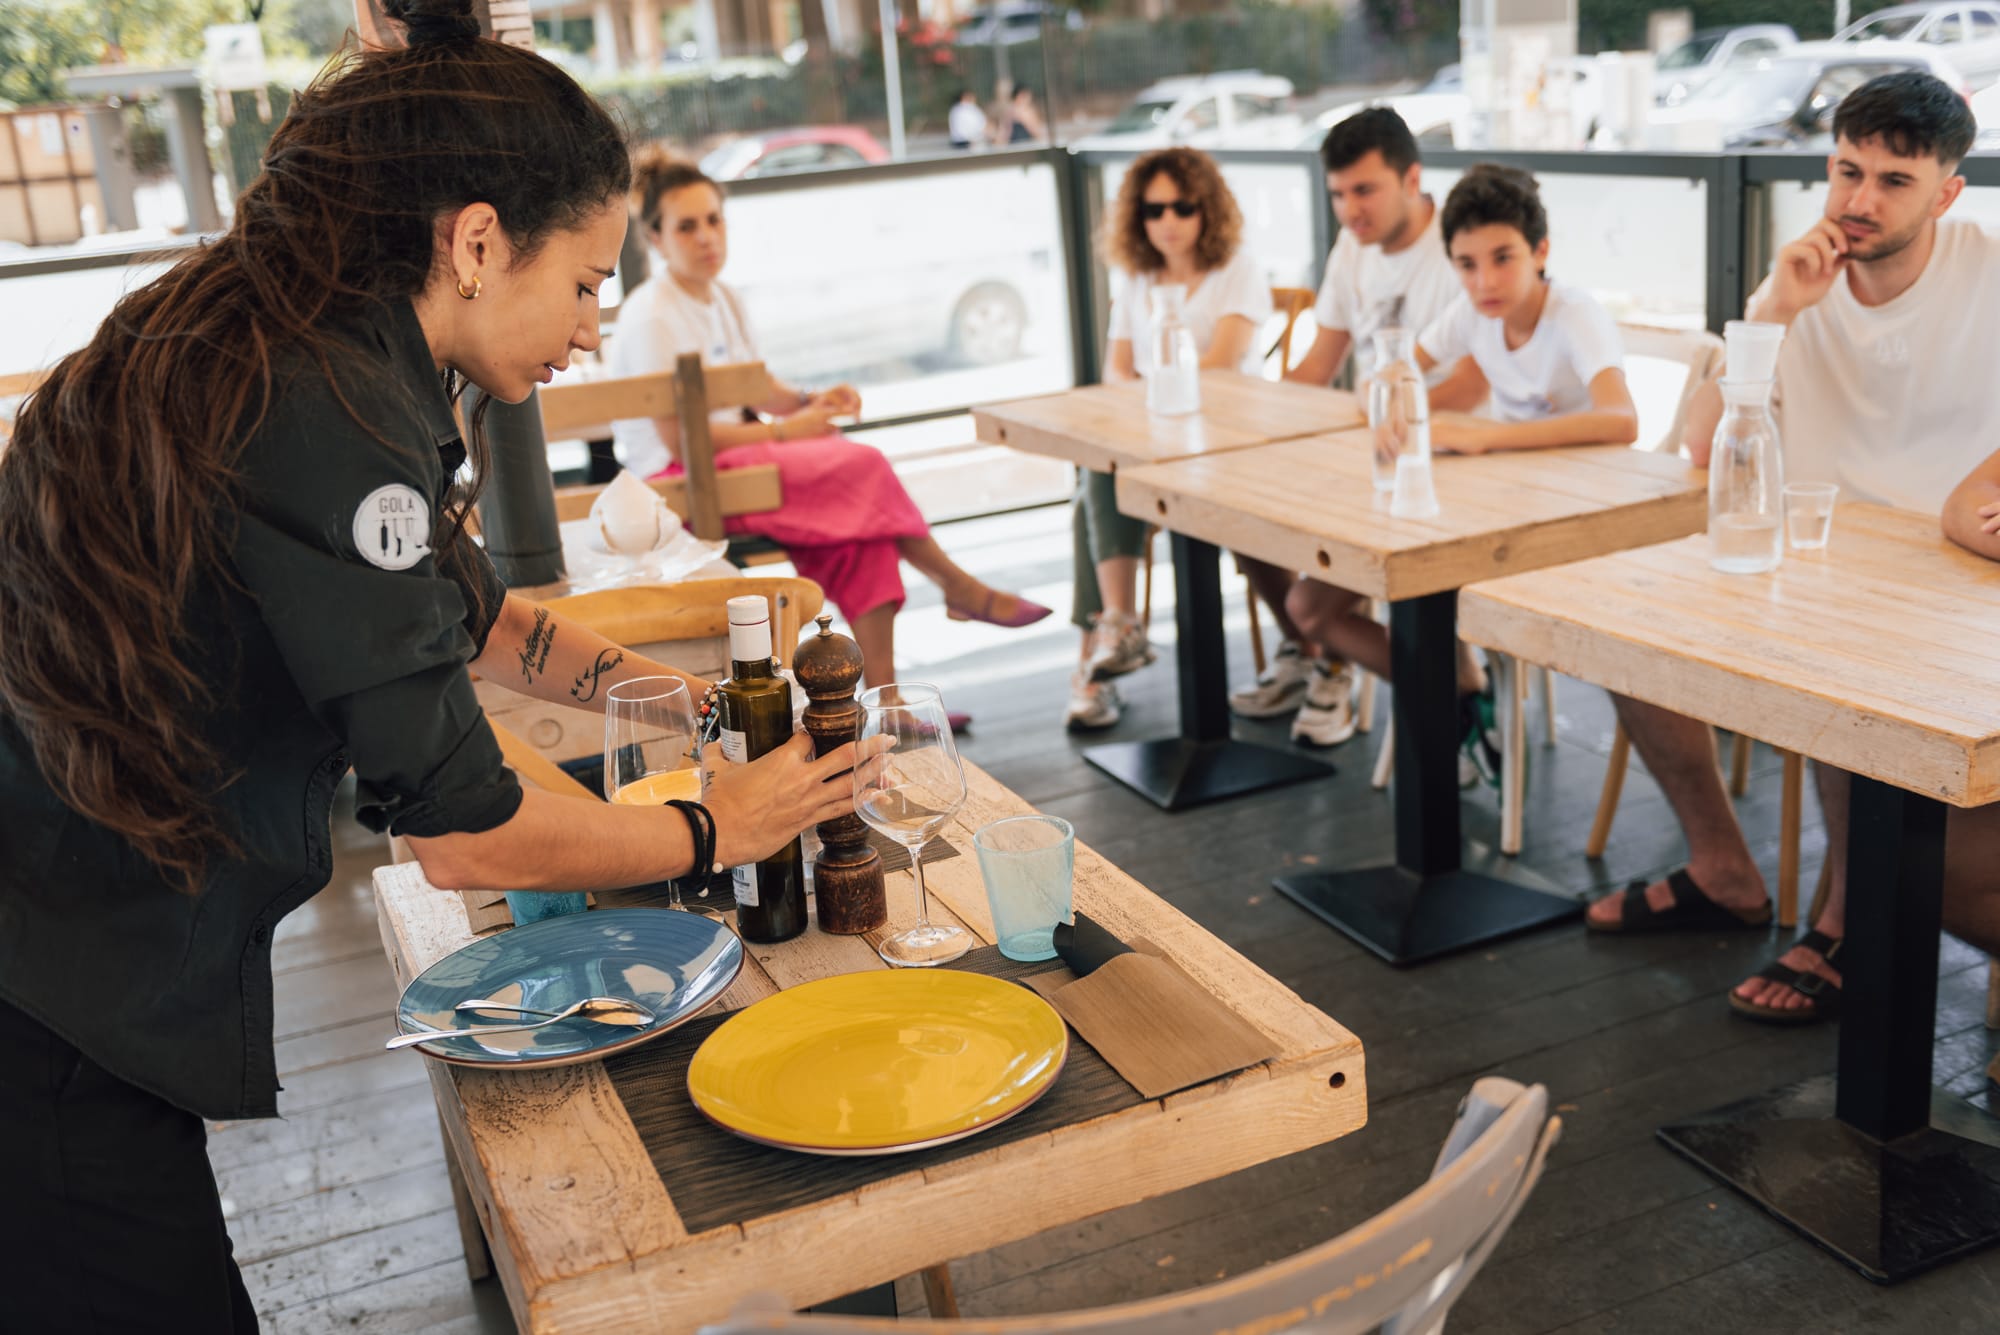 A Bari i ragazzi autistici fanno esperienza in cucina con “Le mani in pasta”